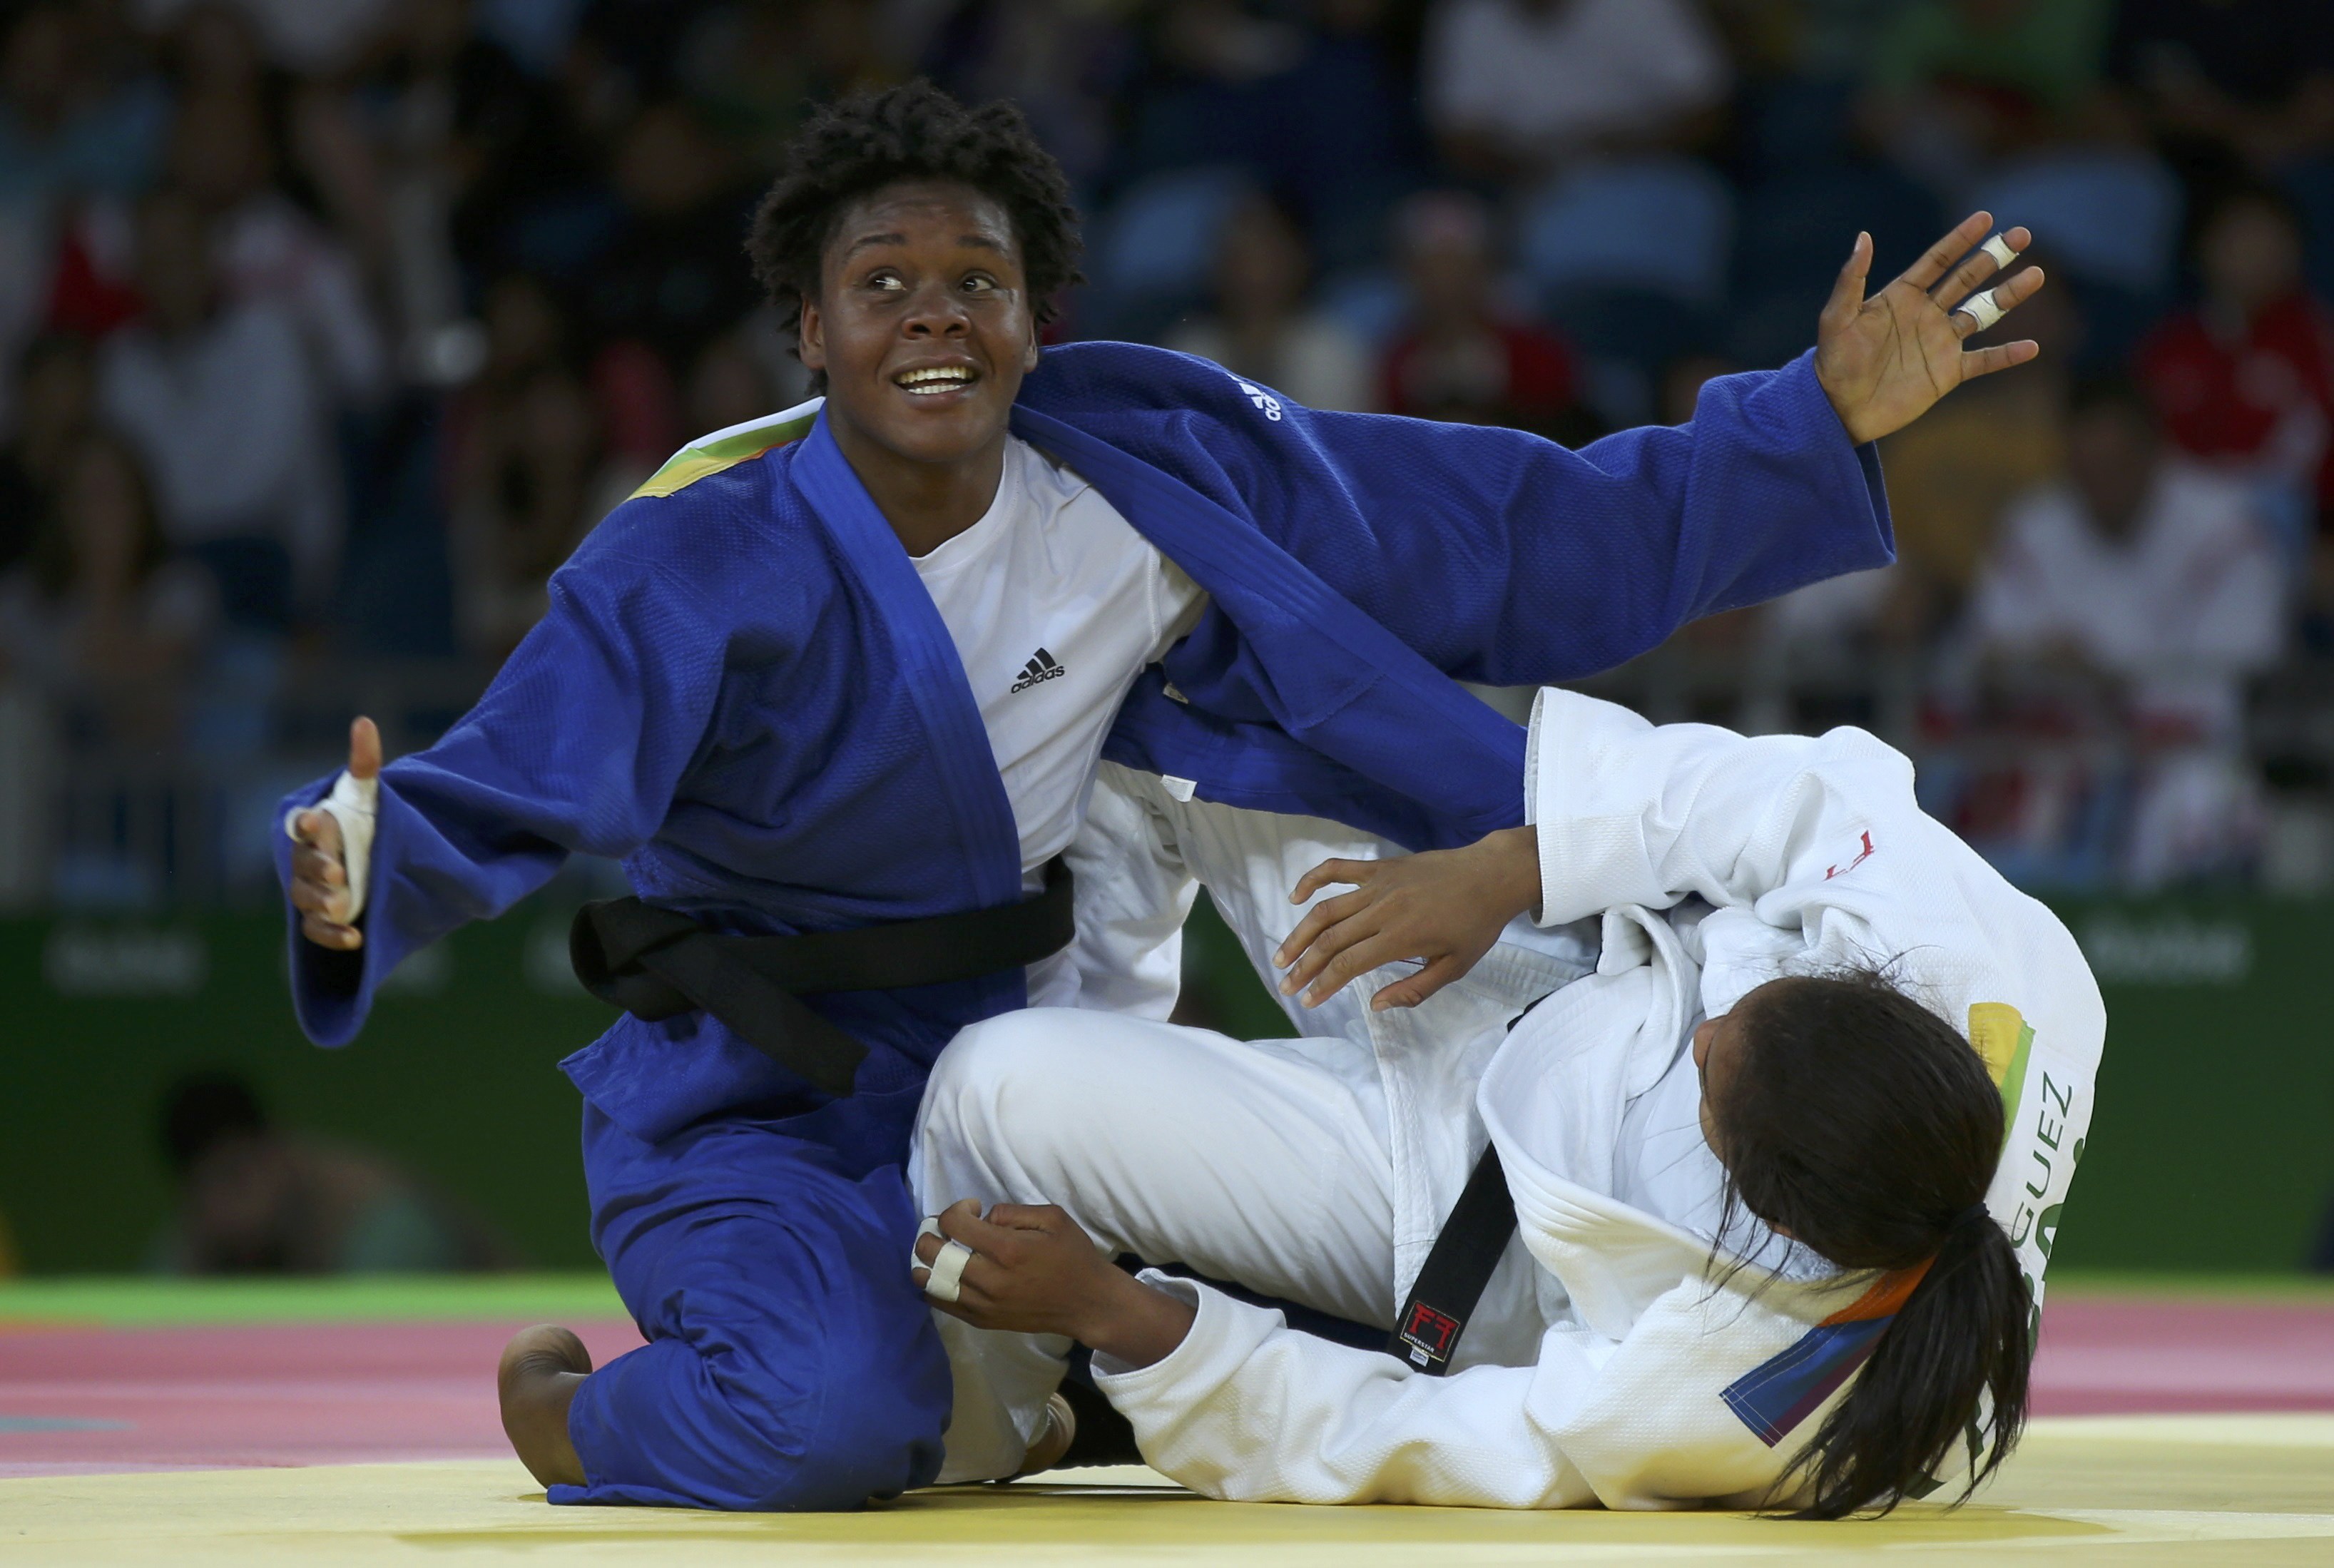 Judoca Elvismar Rodríguez cayó en su primer combate en Río 2016